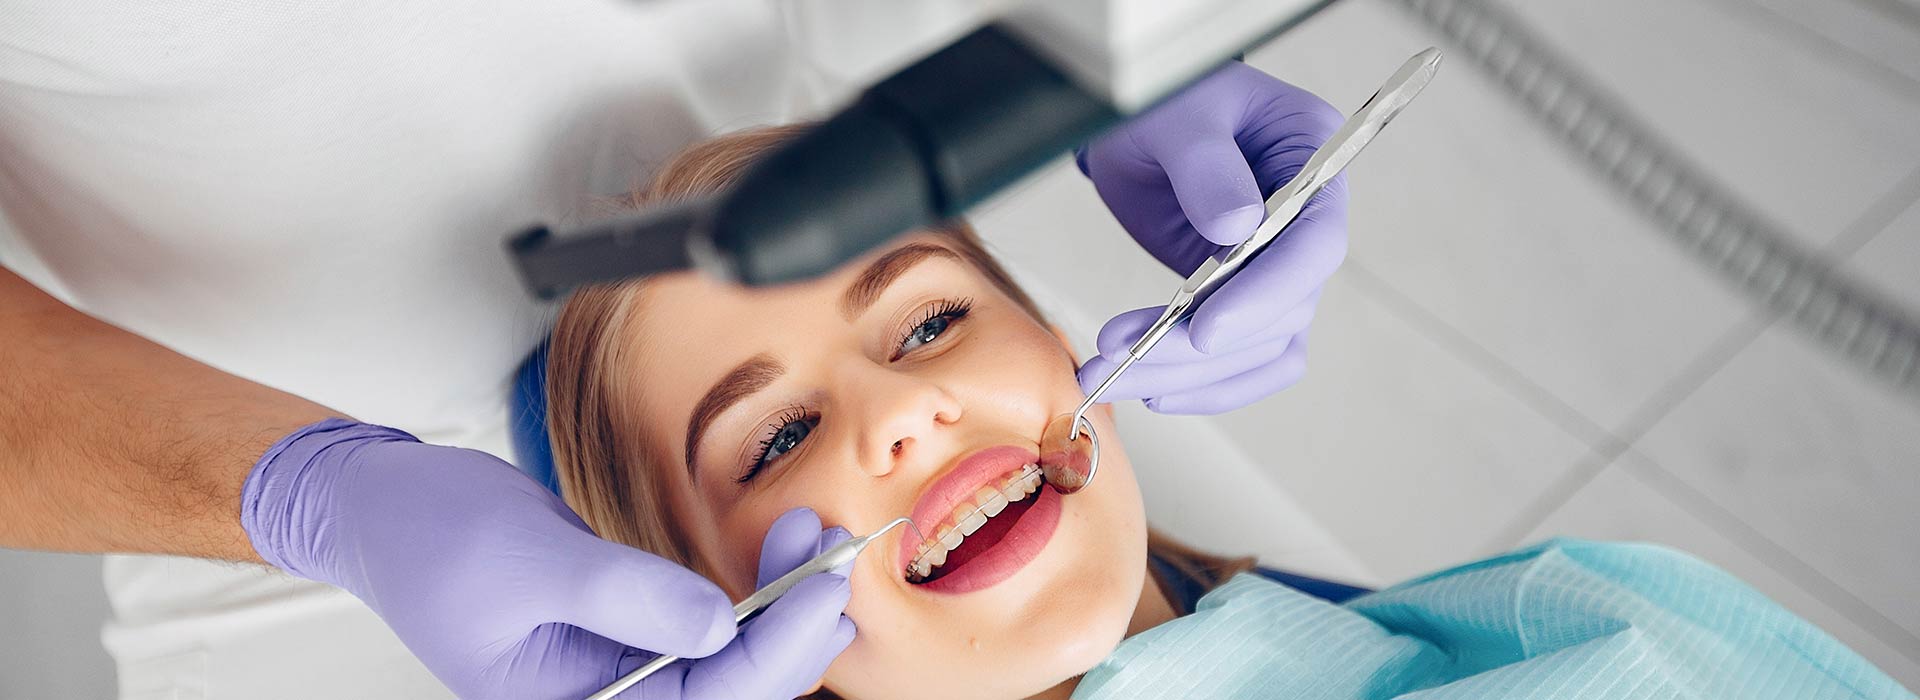 Cómo afecta la salud dental a nuestro organismo